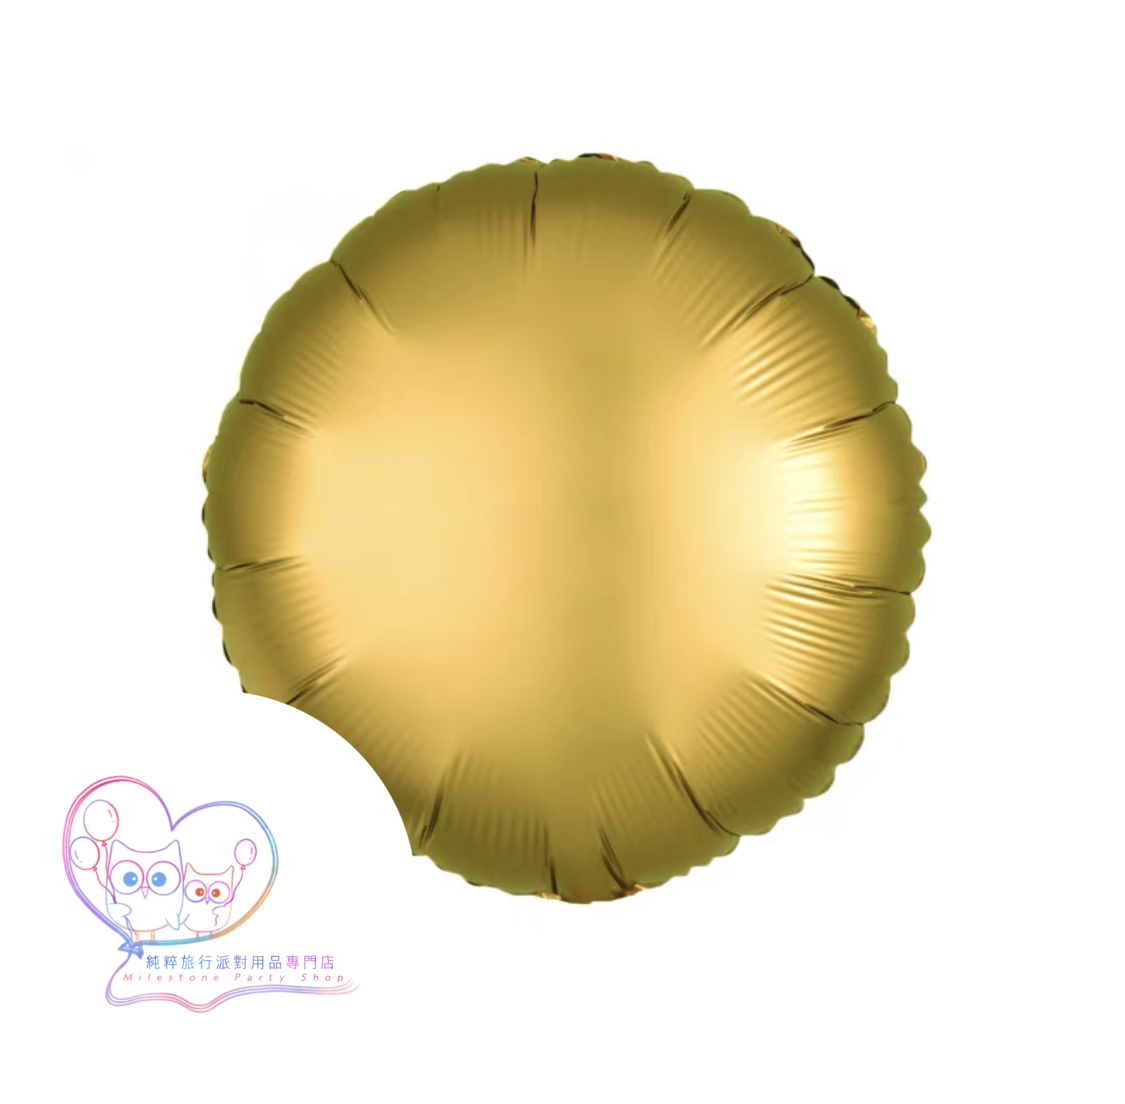 18吋圓形鋁膜氣球 (磨砂金色) 18OM1